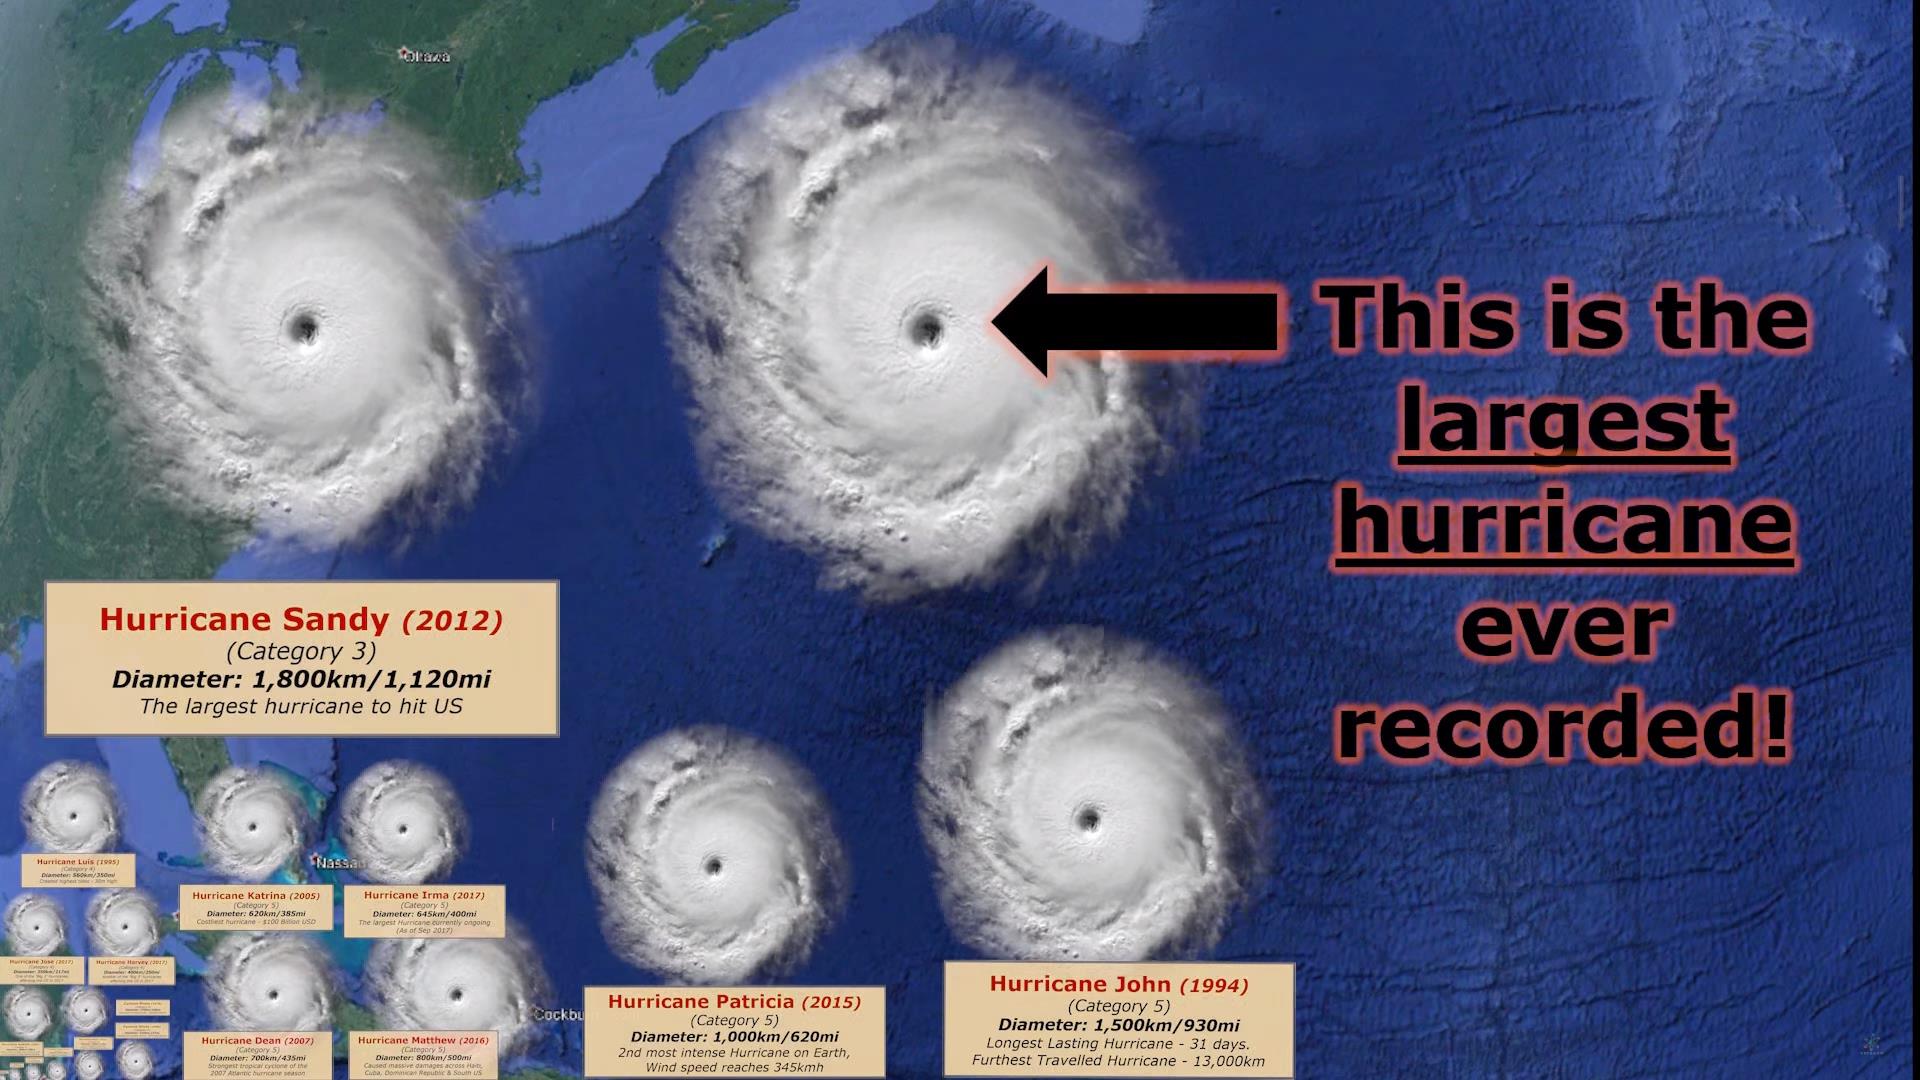 มาดูกันว่า “พายุ” แต่ละลูกที่เคยเกิดขึ้นบนโลก มันยิ่งใหญ่และรุนแรงขนาดไหน